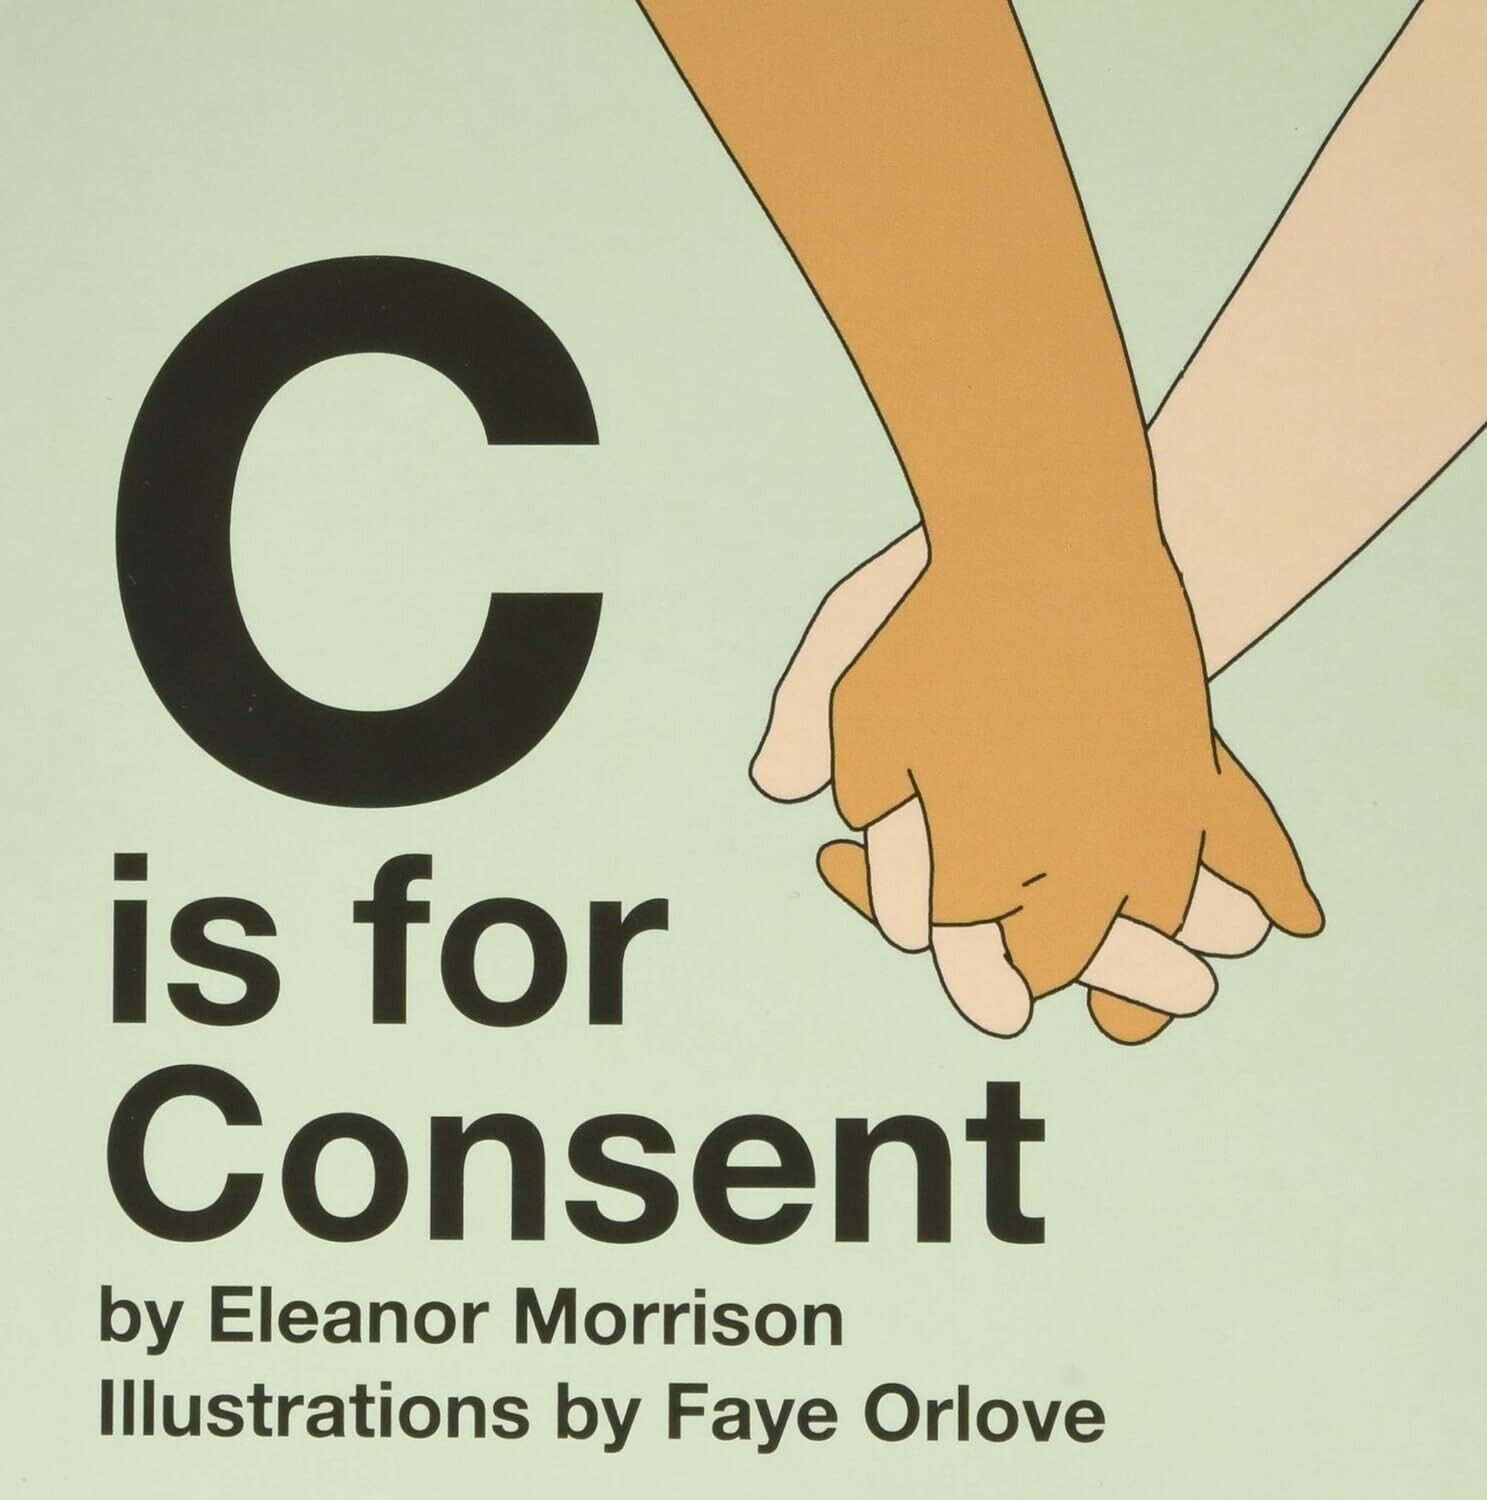 C is for Consent - E. Morrison & F. Orlove, 2018 Illus. Board Book (Age 3 - 5)